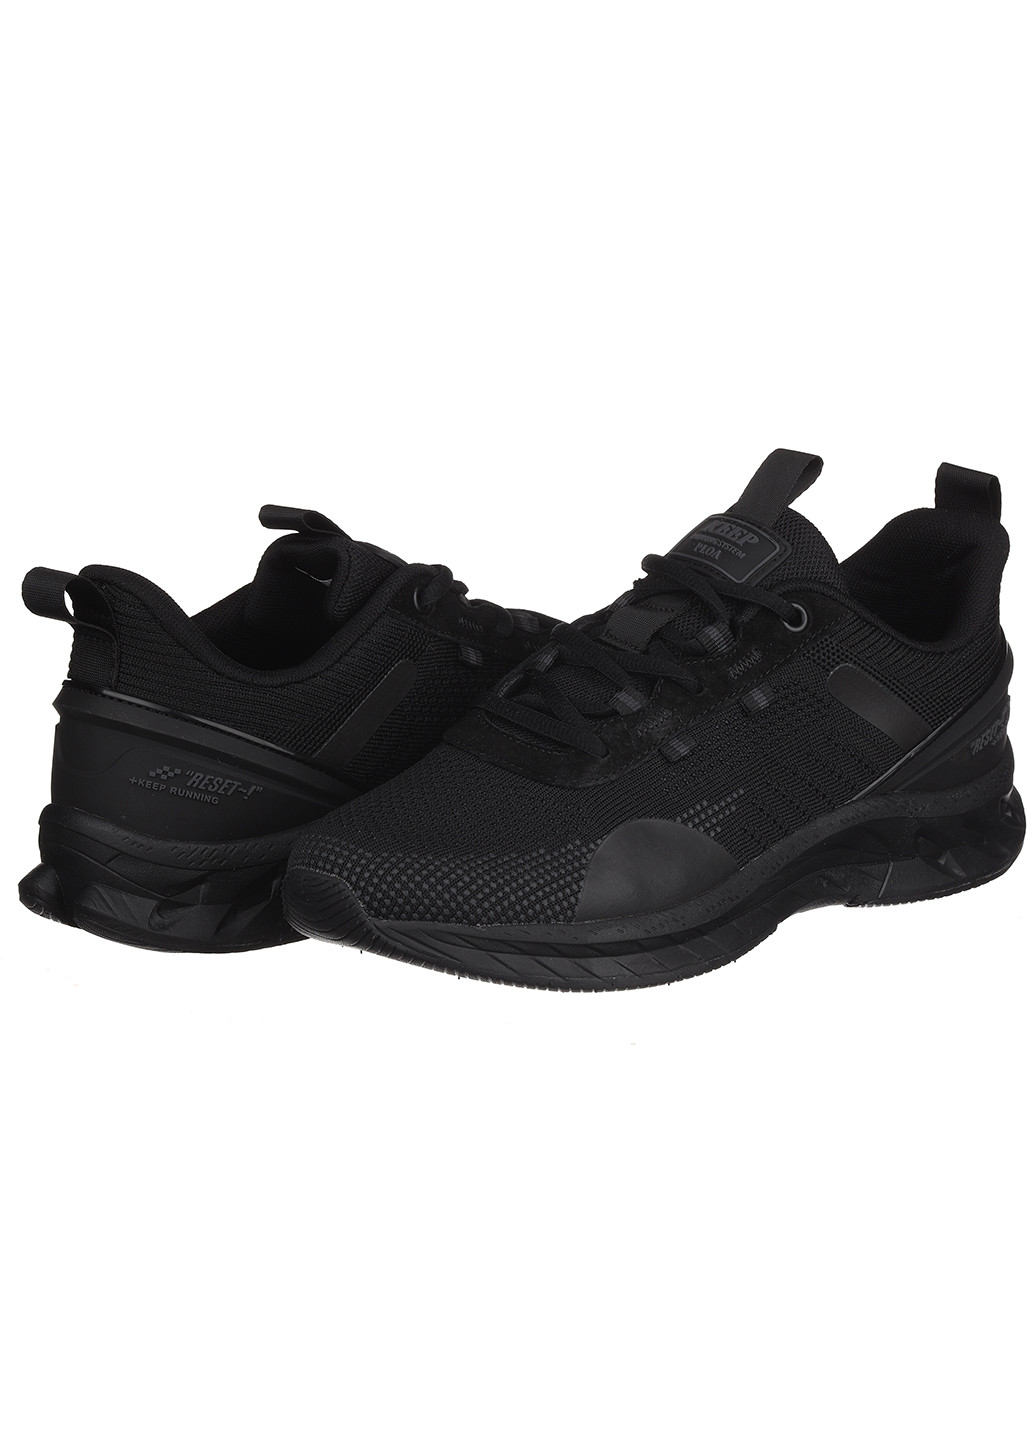 Черные демисезонные мужские кроссовки m7347-1c Baas